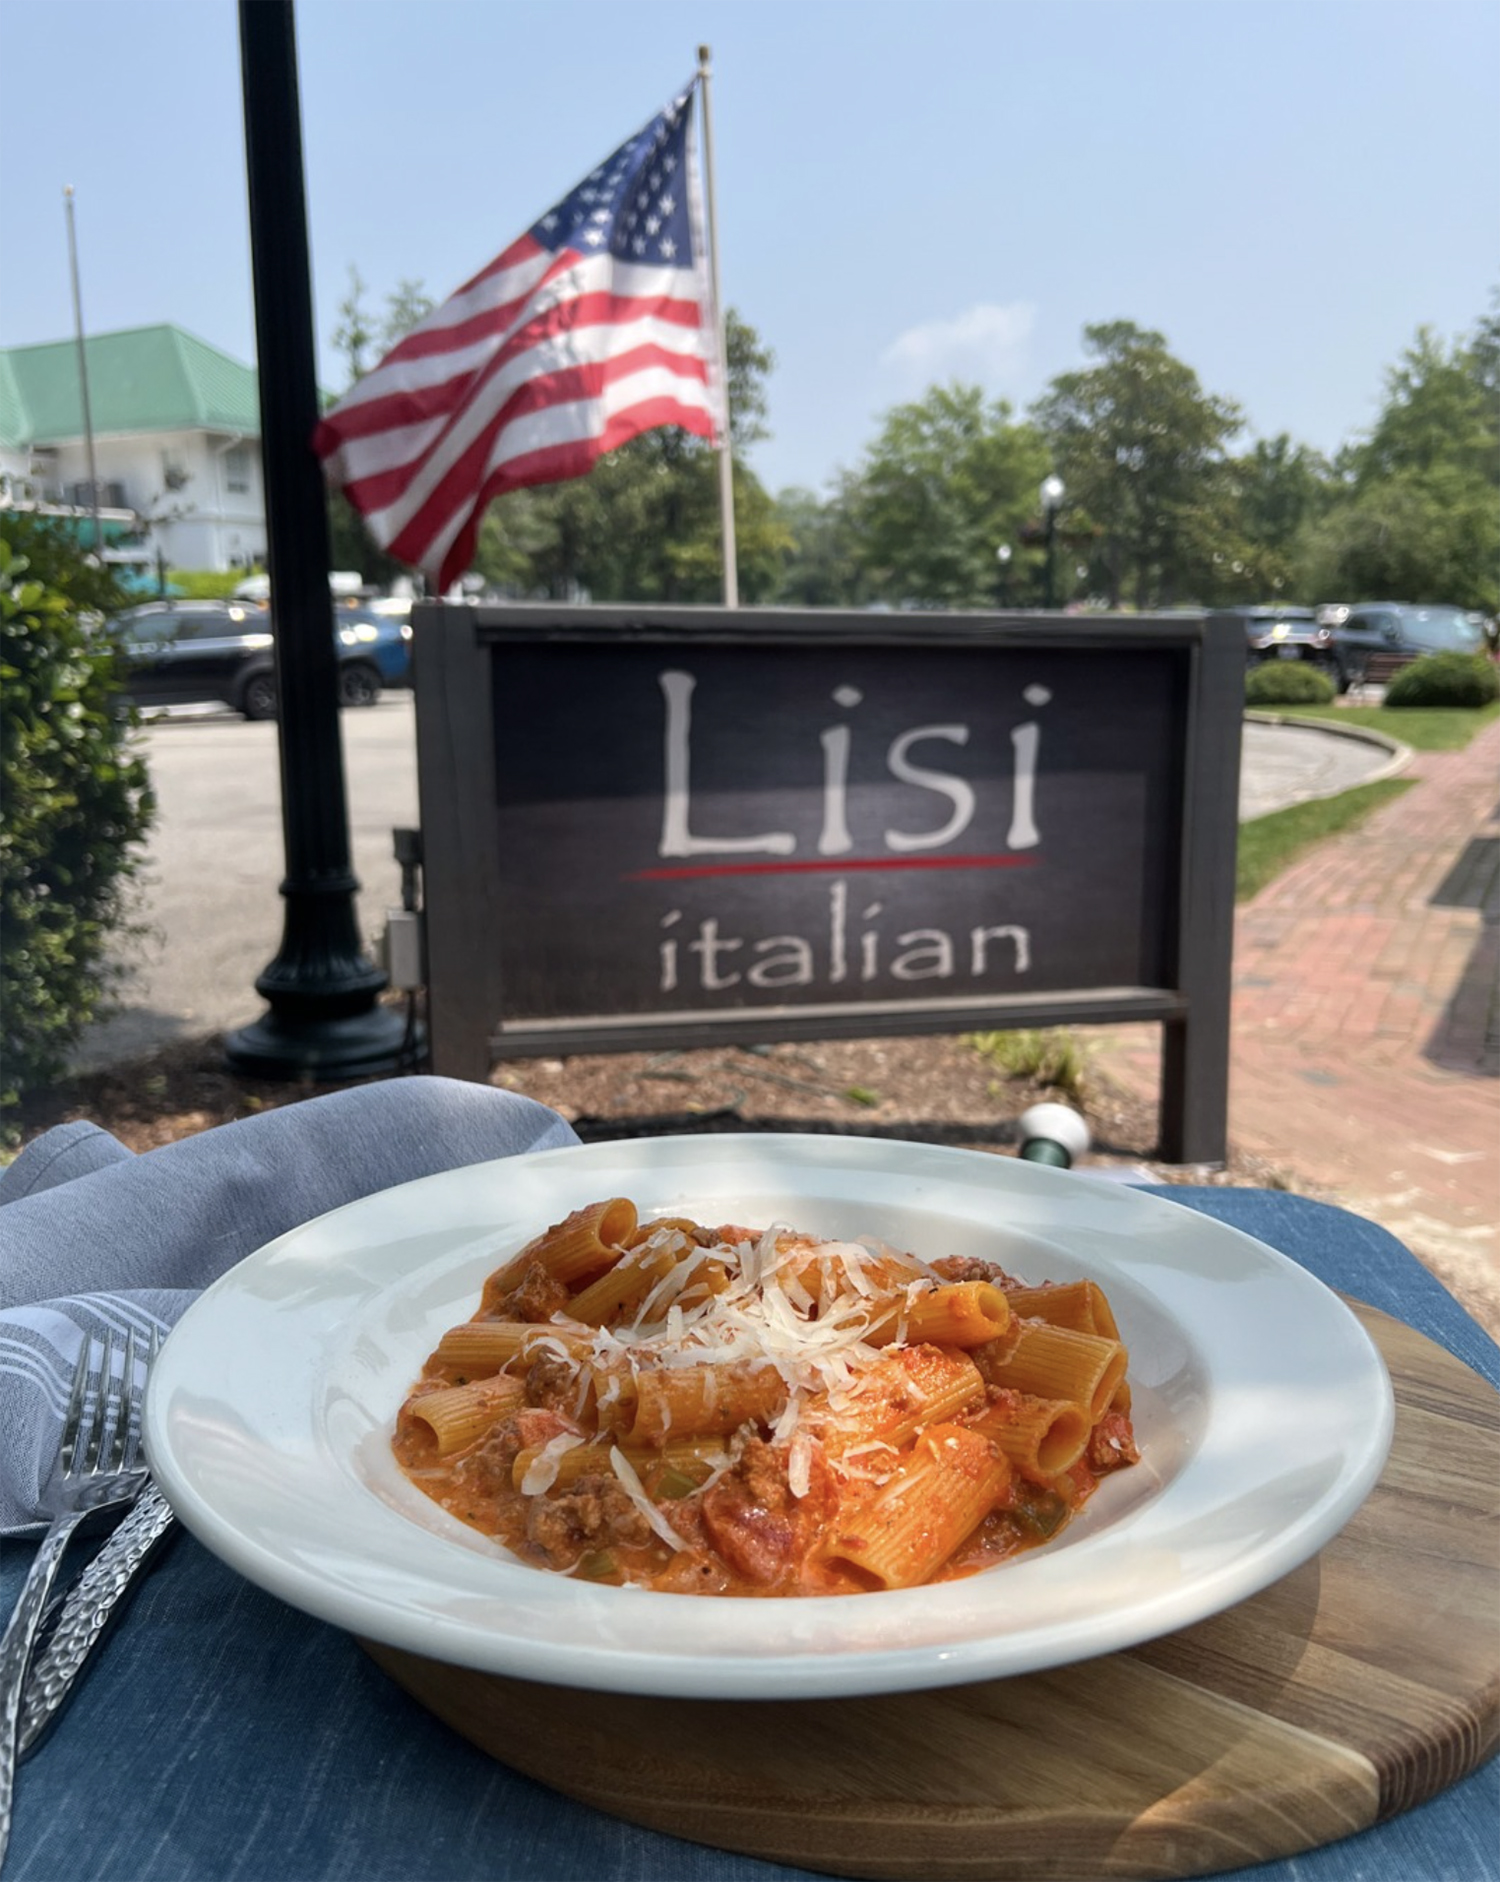 Pasta from Lisi Italian restaurant in Pinehurst, North Carolina.